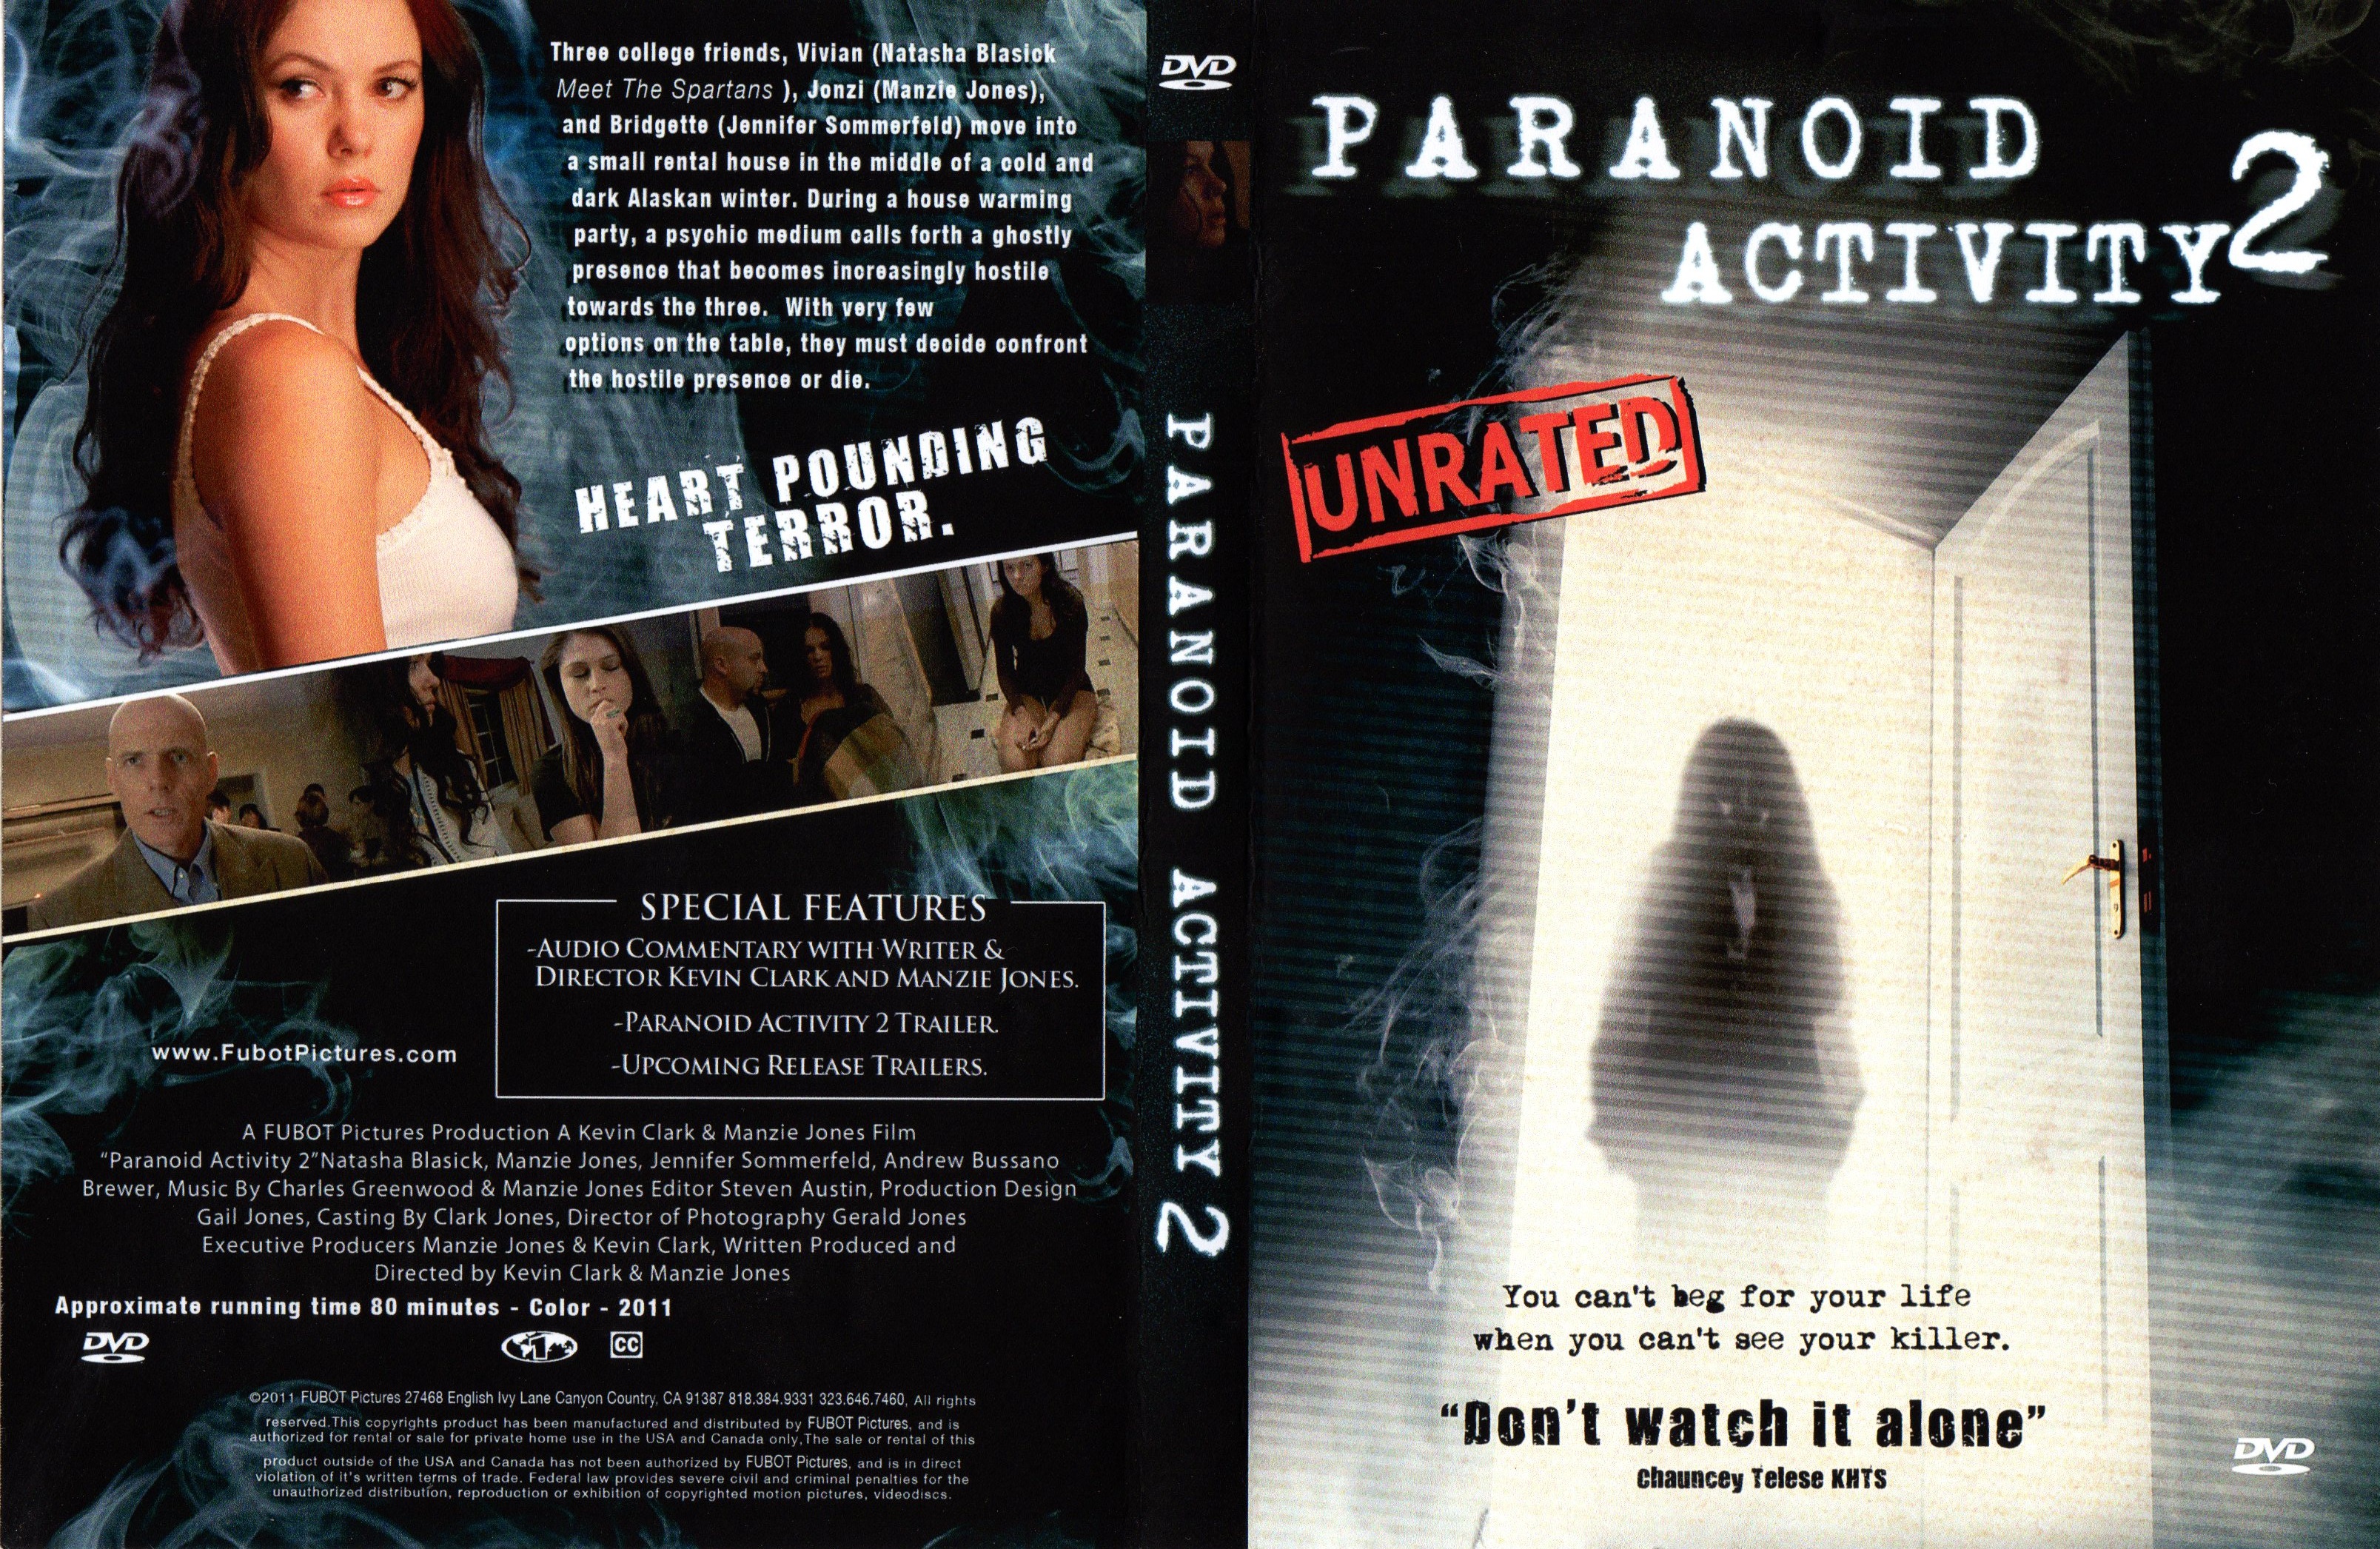 Paranoid Activity 2 DVD cover with Natasha Blasick